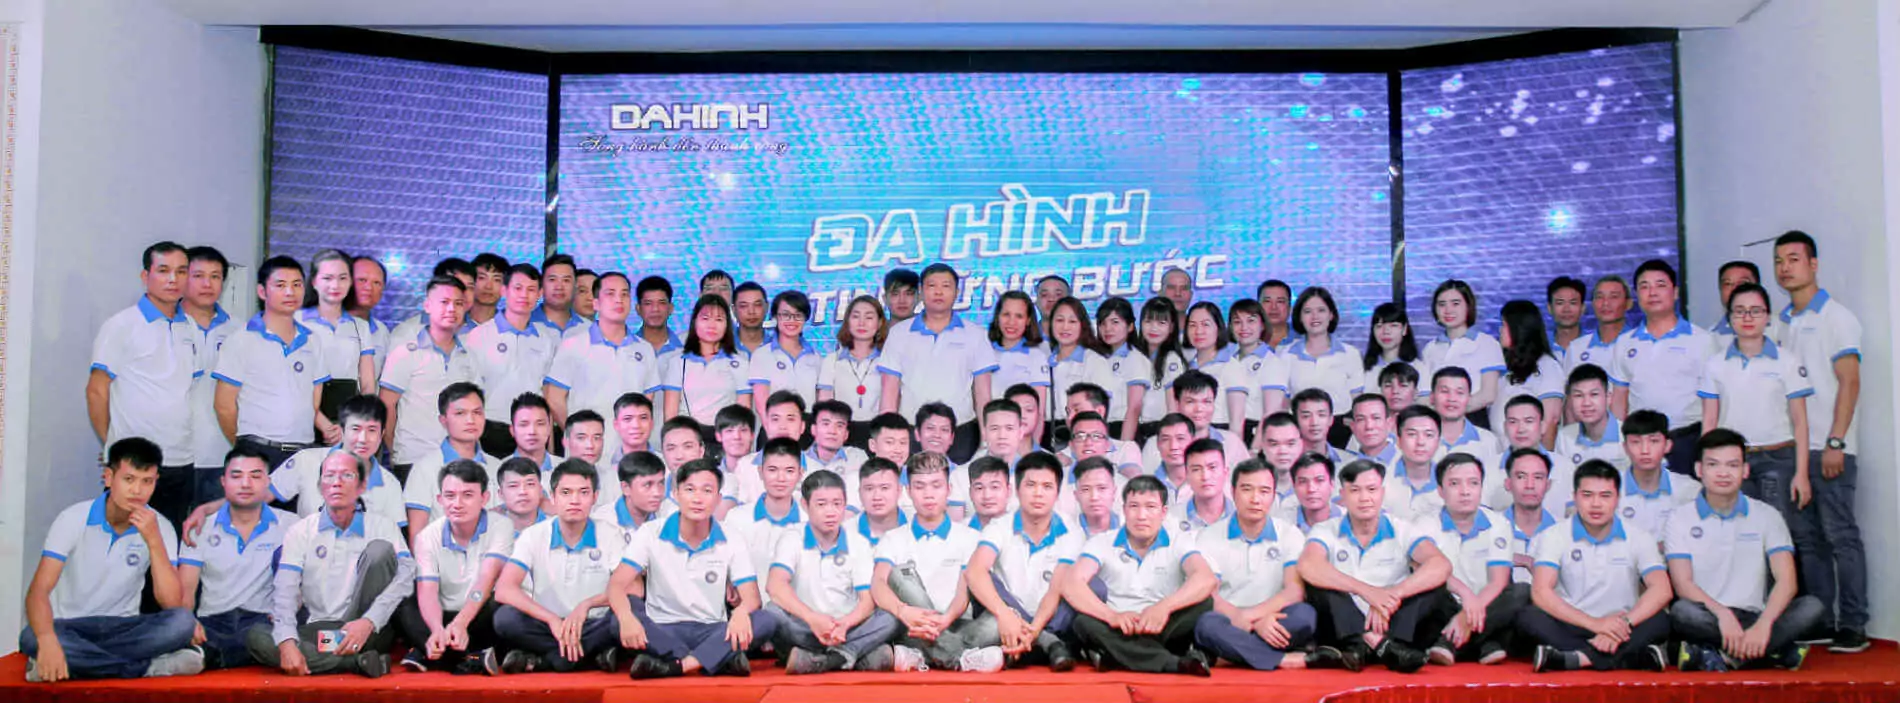 Công ty Đa Hình: 20 năm gia công định hình inox tấm uy tín tại Hà Nội